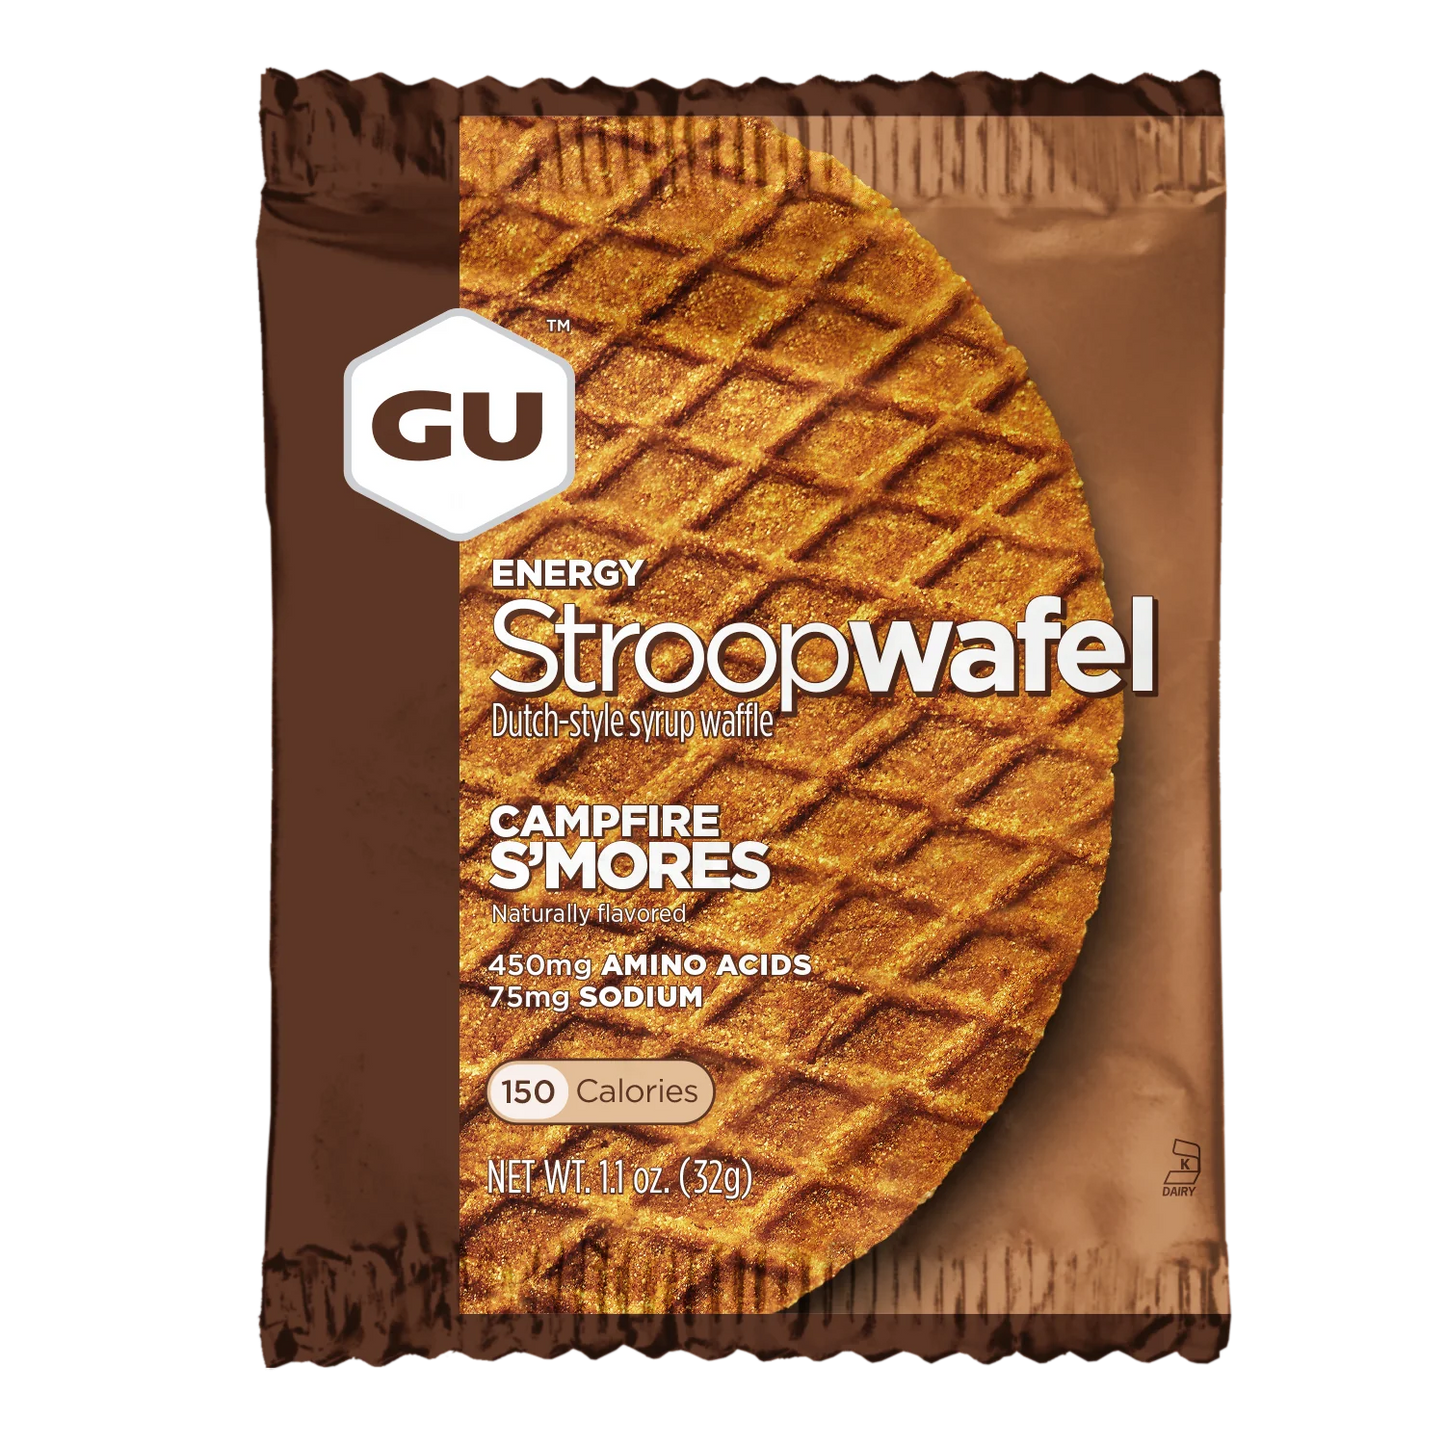 GU Energy Stroopwafel - Campfire S'mores